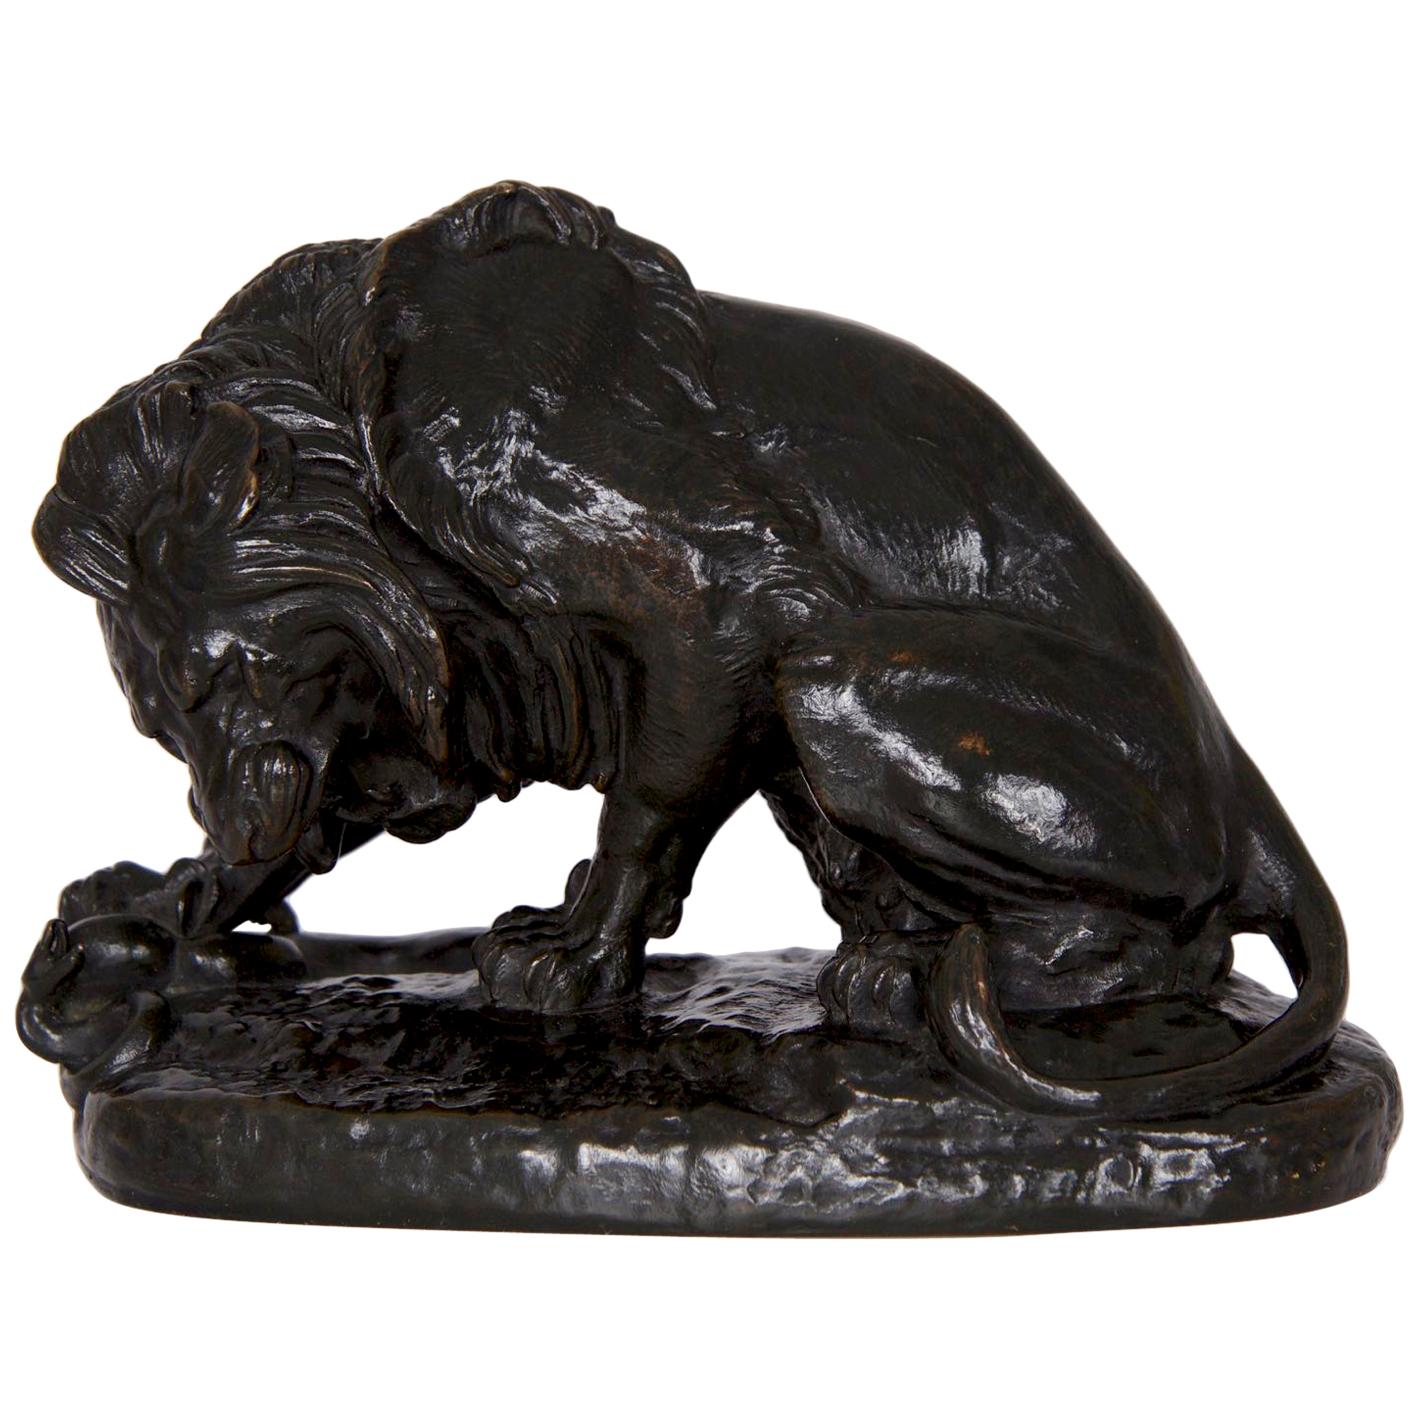 Antique French Barbedienne Bronze Sculpture “Lion au Serpent” after Antoine-Loui